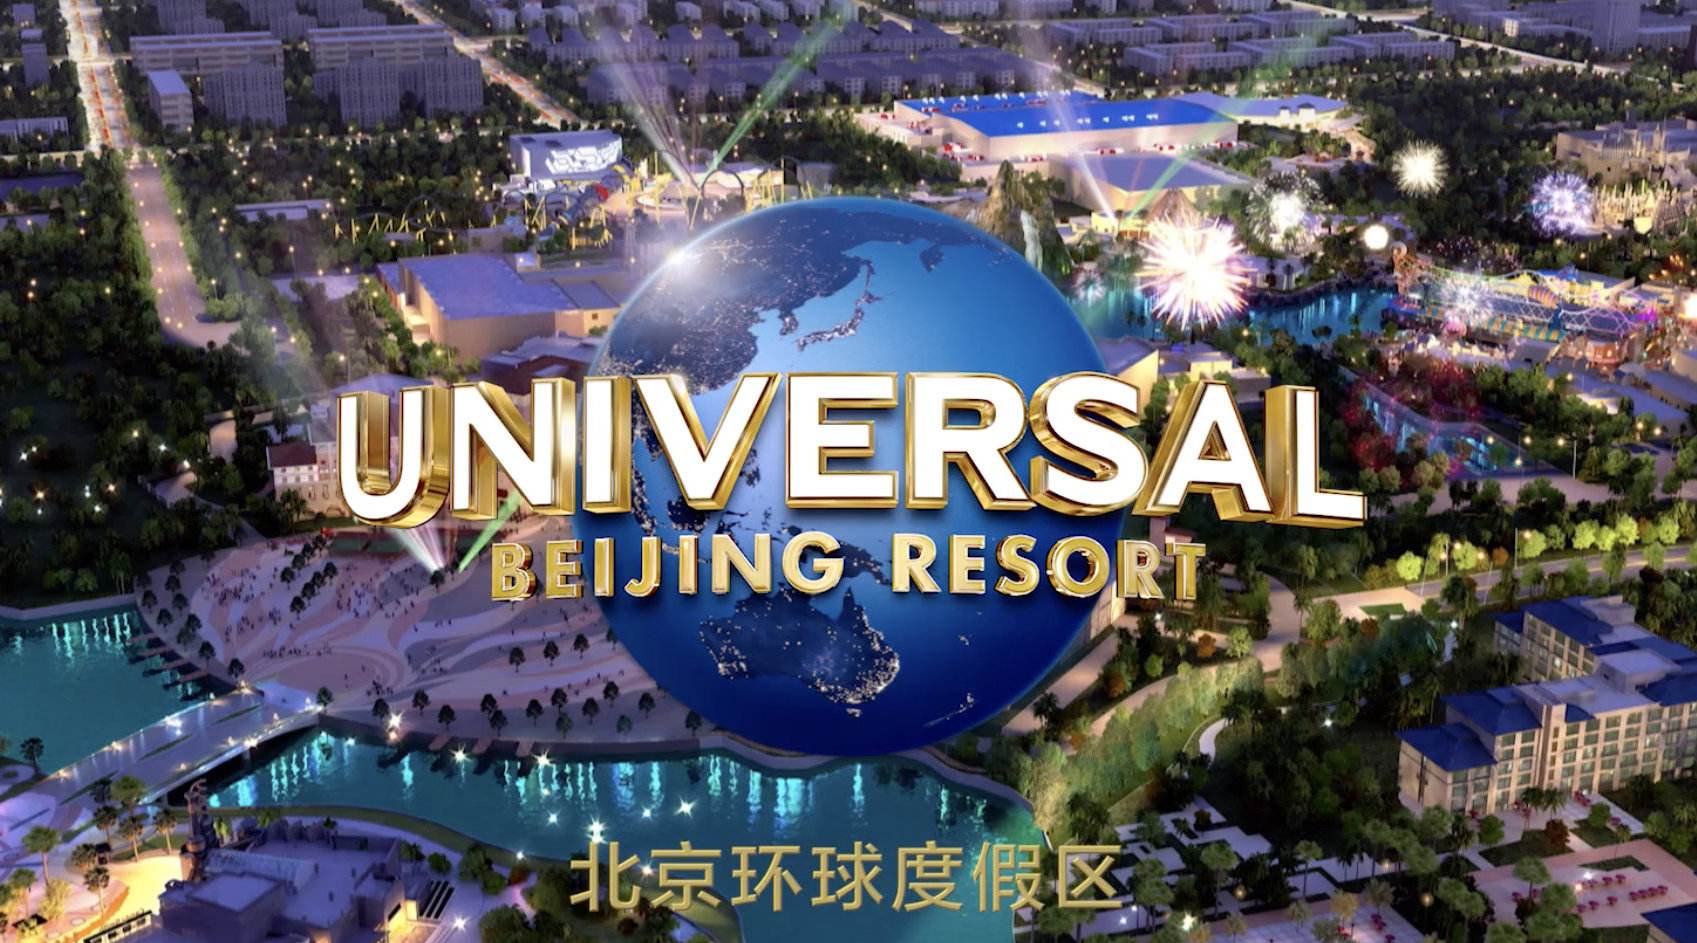 北京环球度假区主体结构及主题公园封顶 将于明年亮相.jpg